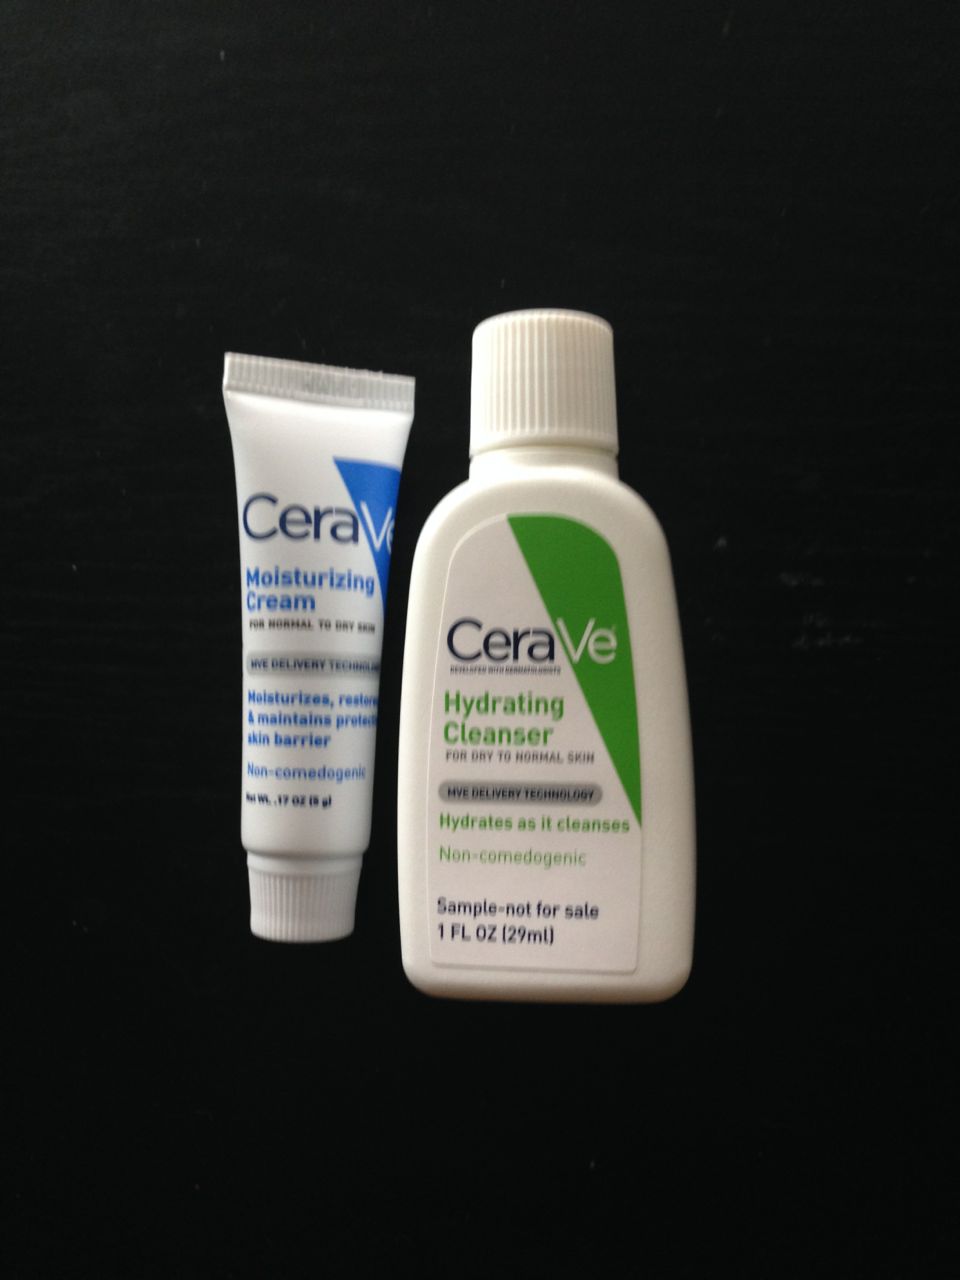 CeraVe sample pack